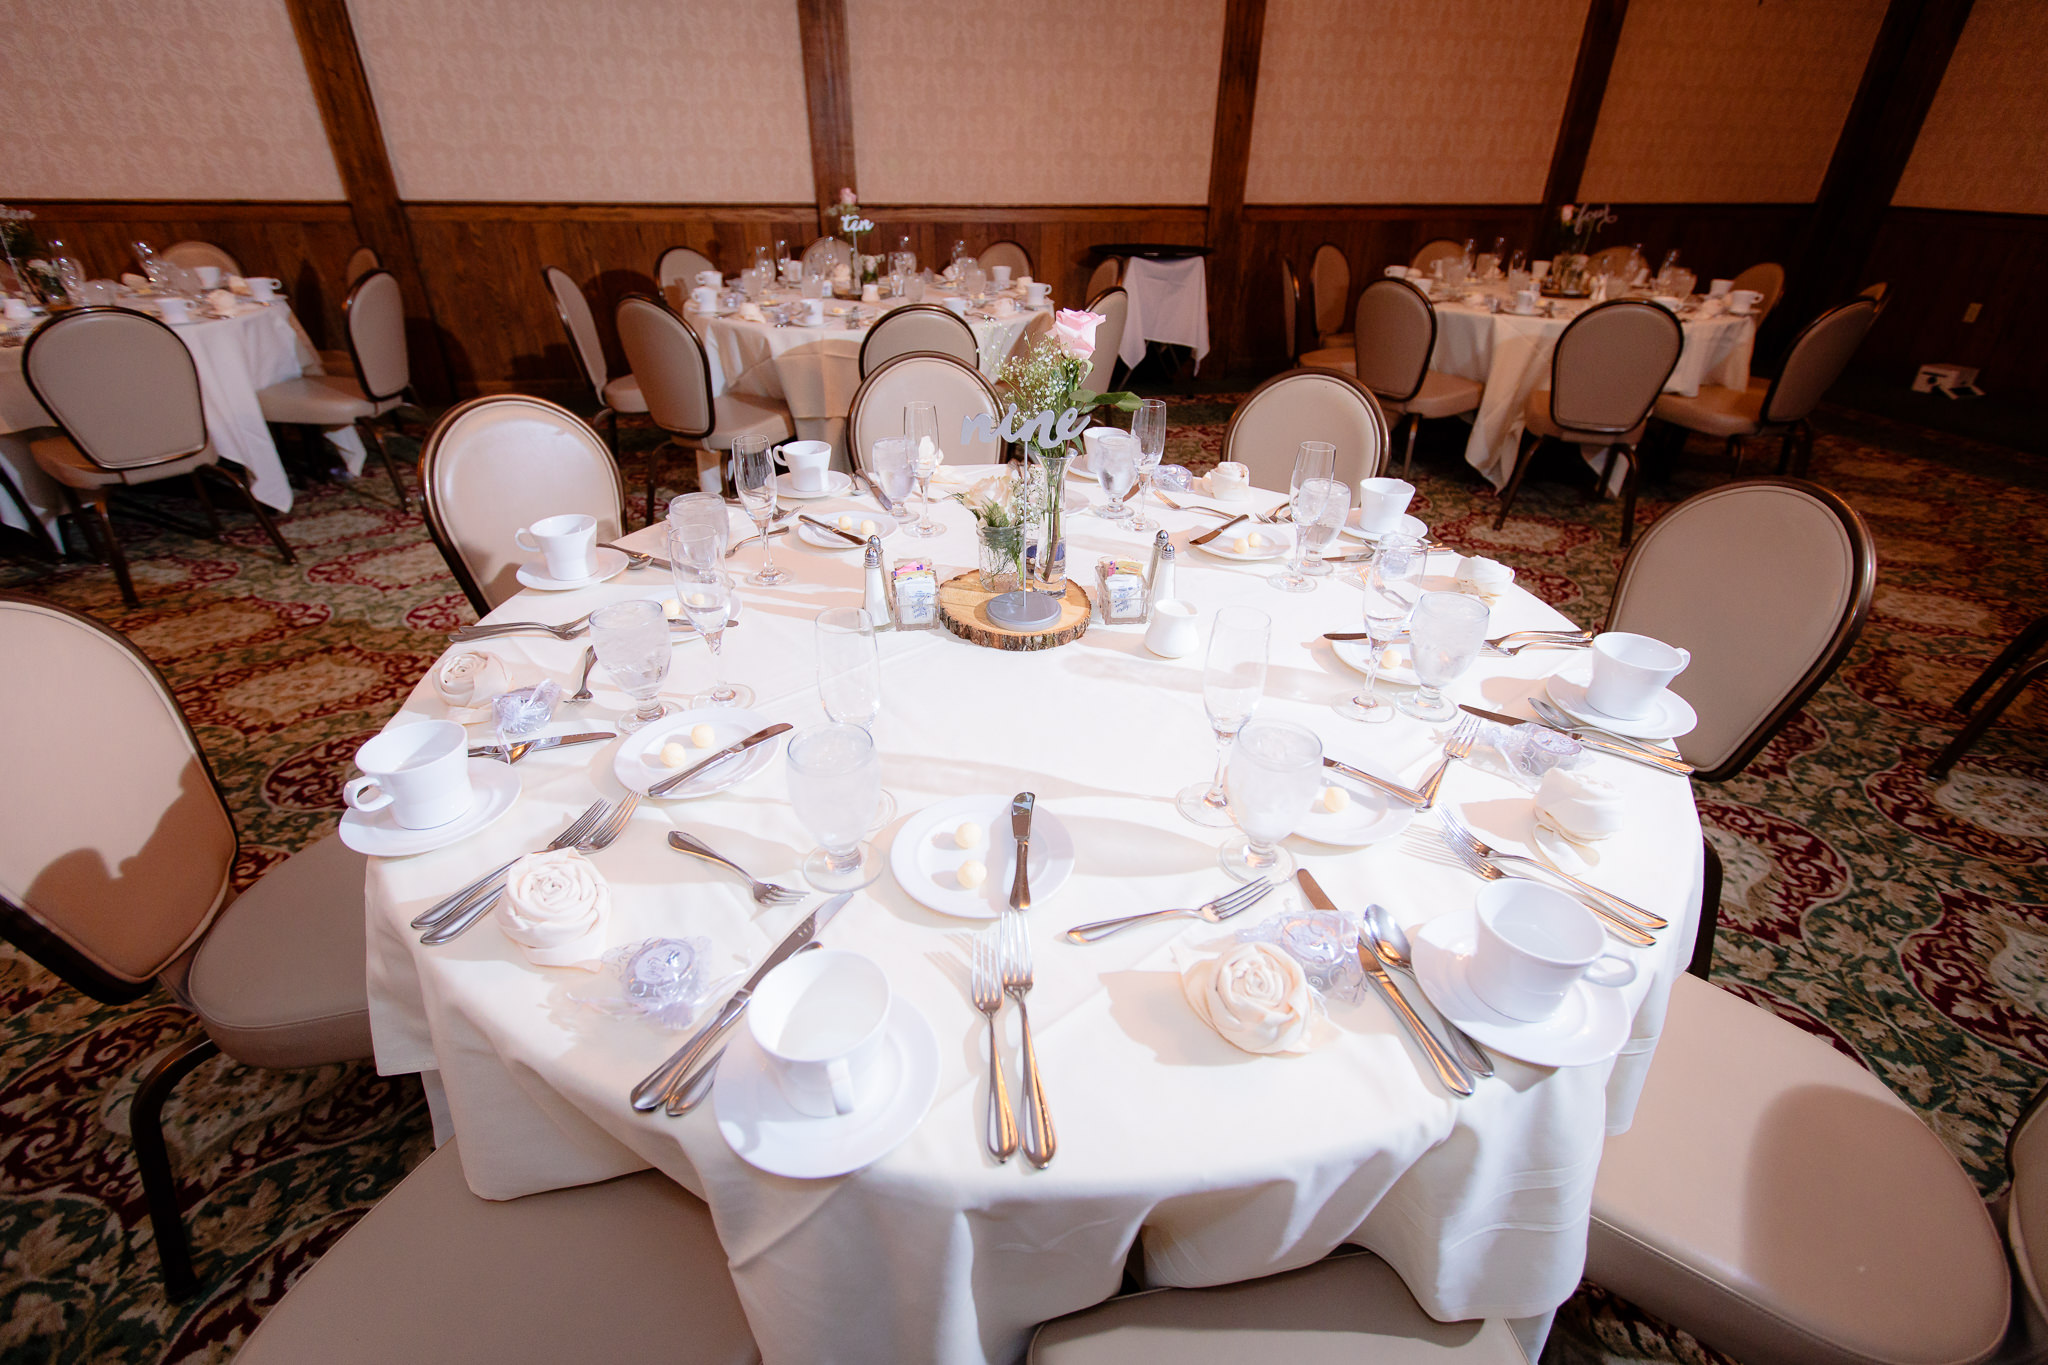 Table set up for a wedding reception at Oglebay